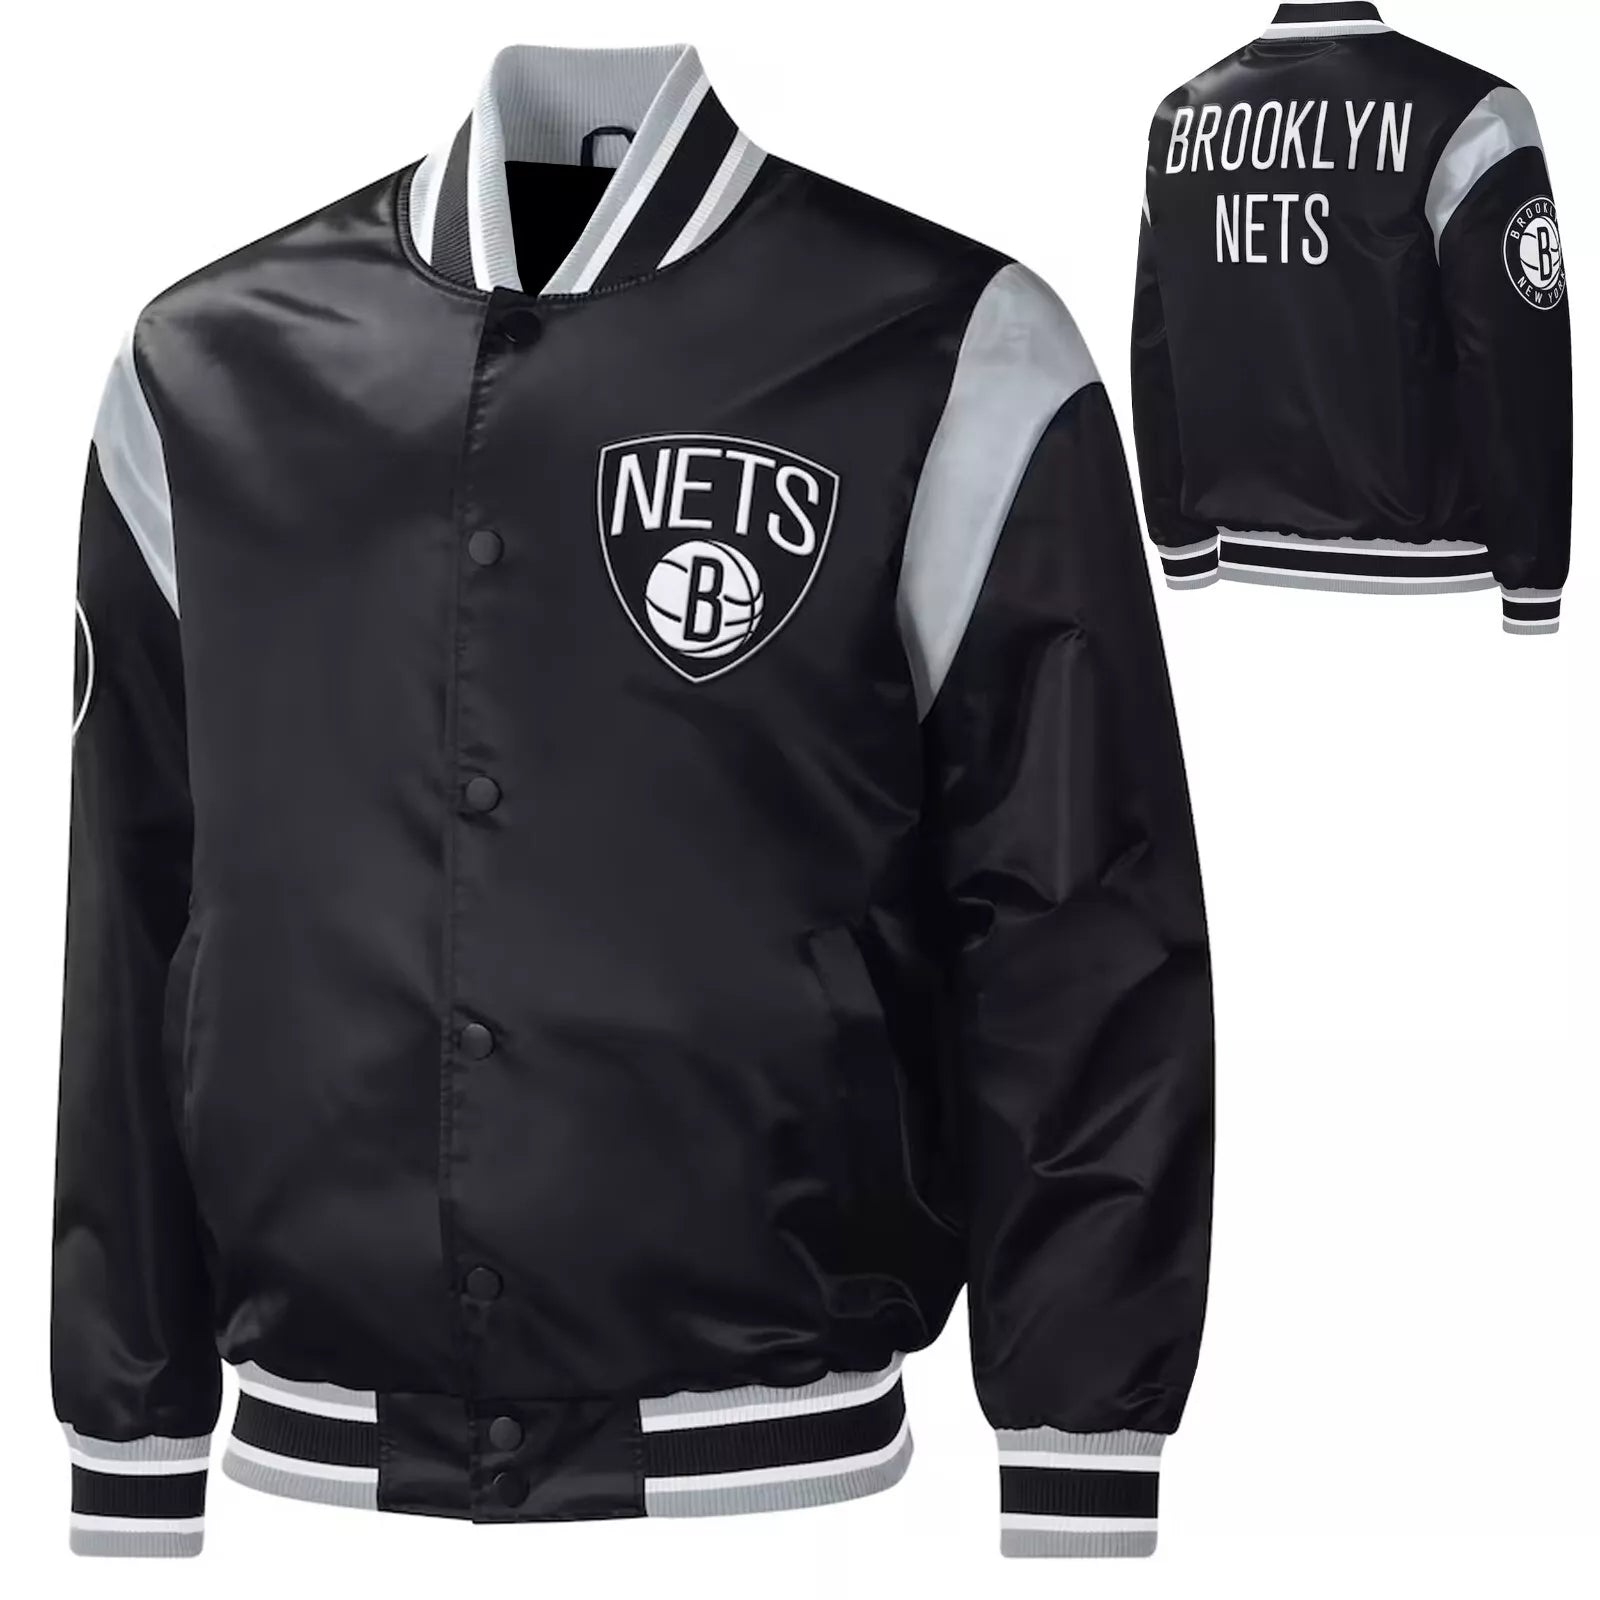 Brooklyn nets Black satin Basketball Jacket Vintage style Varsity Jacket